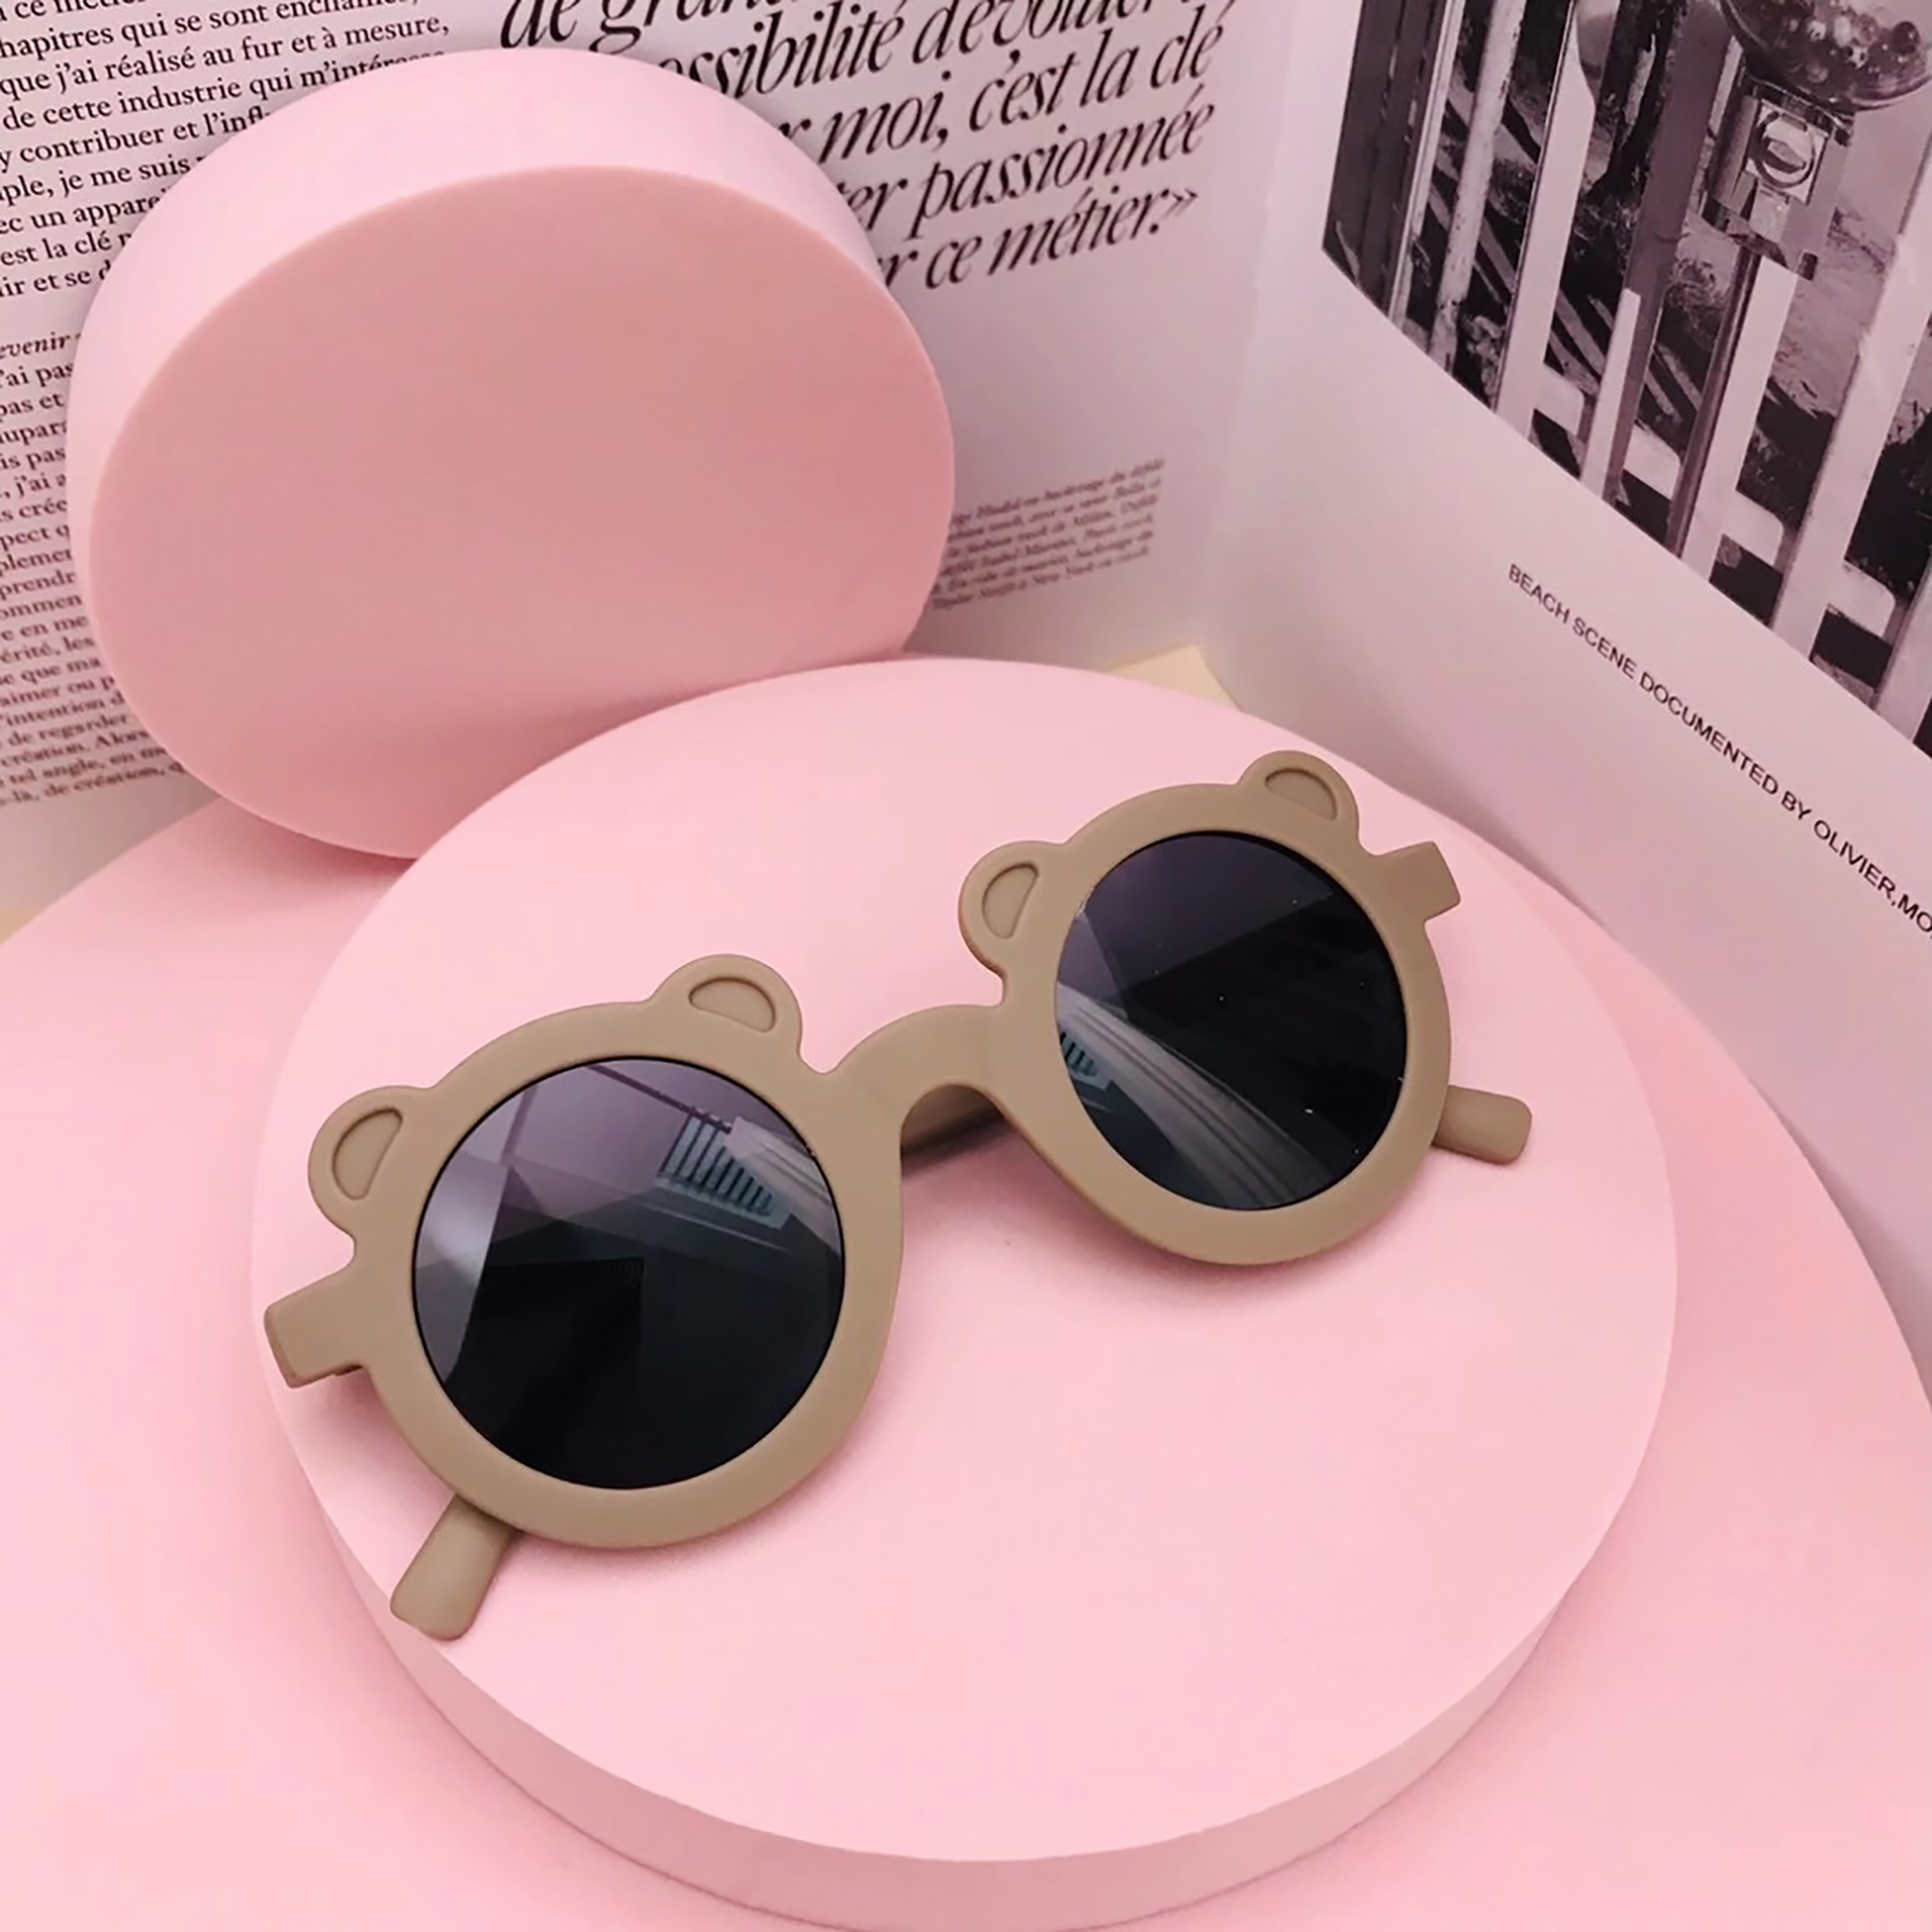 Children Sunglasses Round Frame Bear Ear Sunglasses for Kids Boys Girls - image 1 of 6